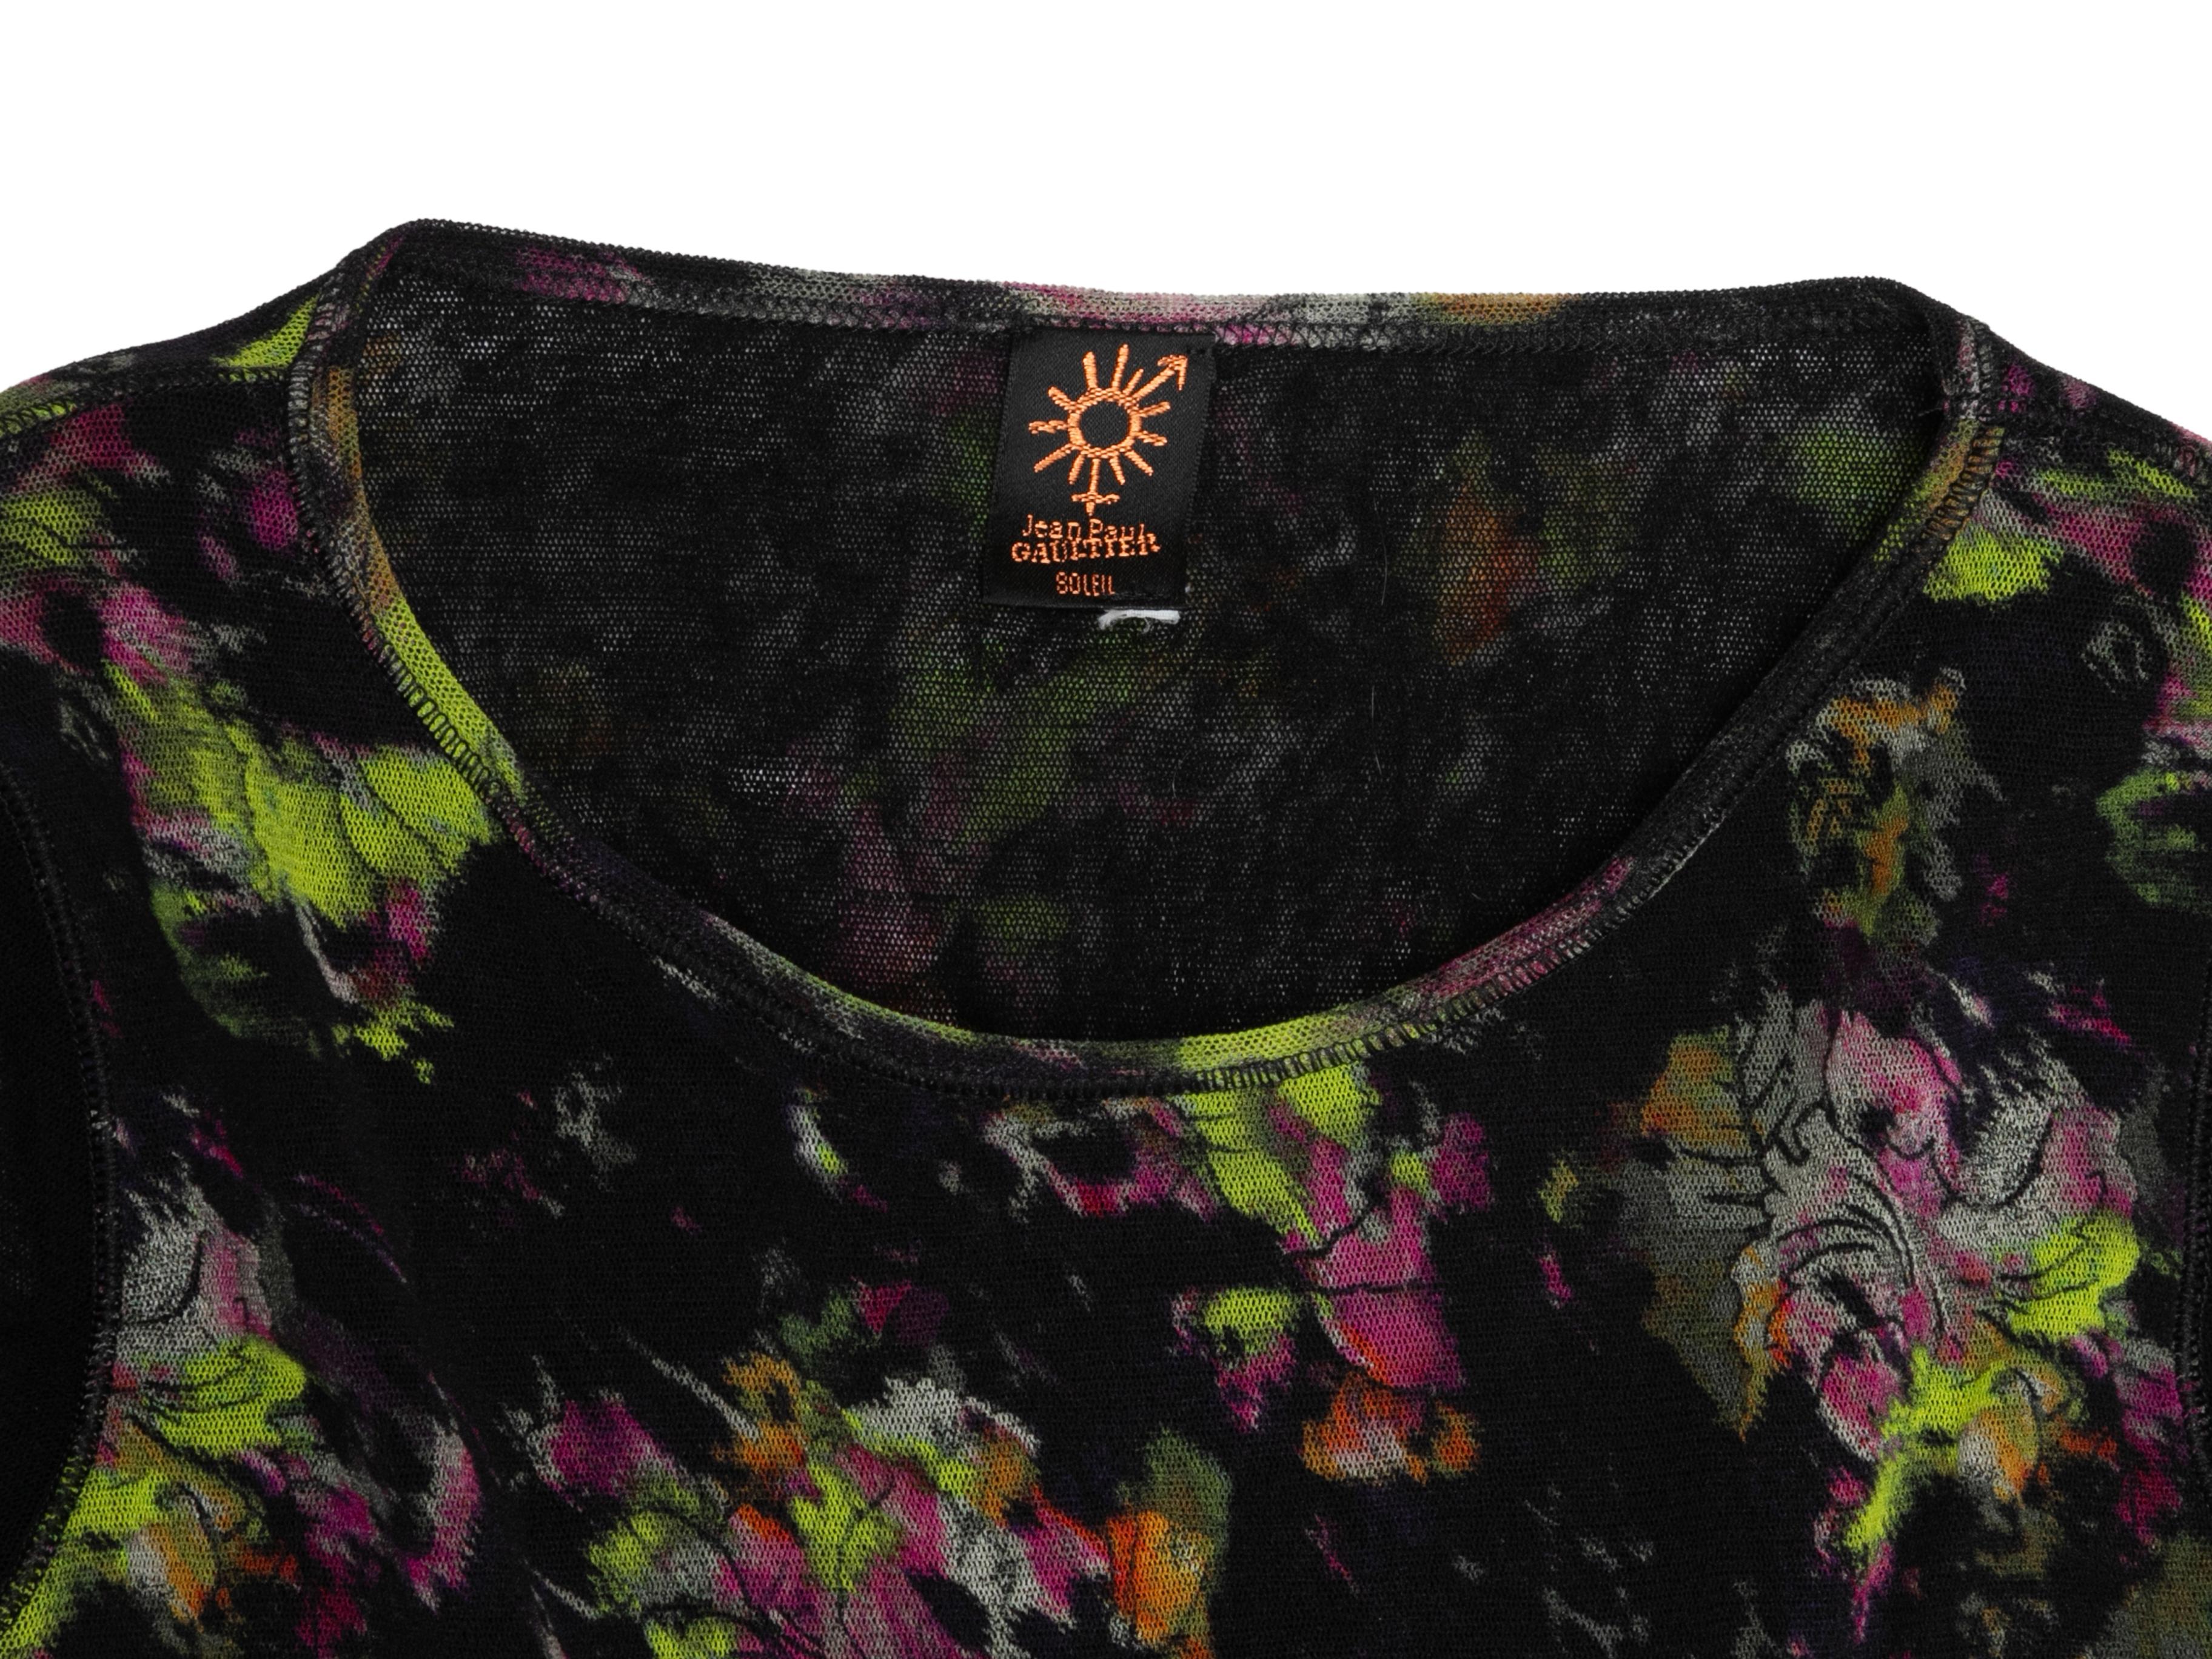 Women's Black & Multicolor Jean Paul Gaultier Soleil Mesh Floral Print Top Size US S For Sale